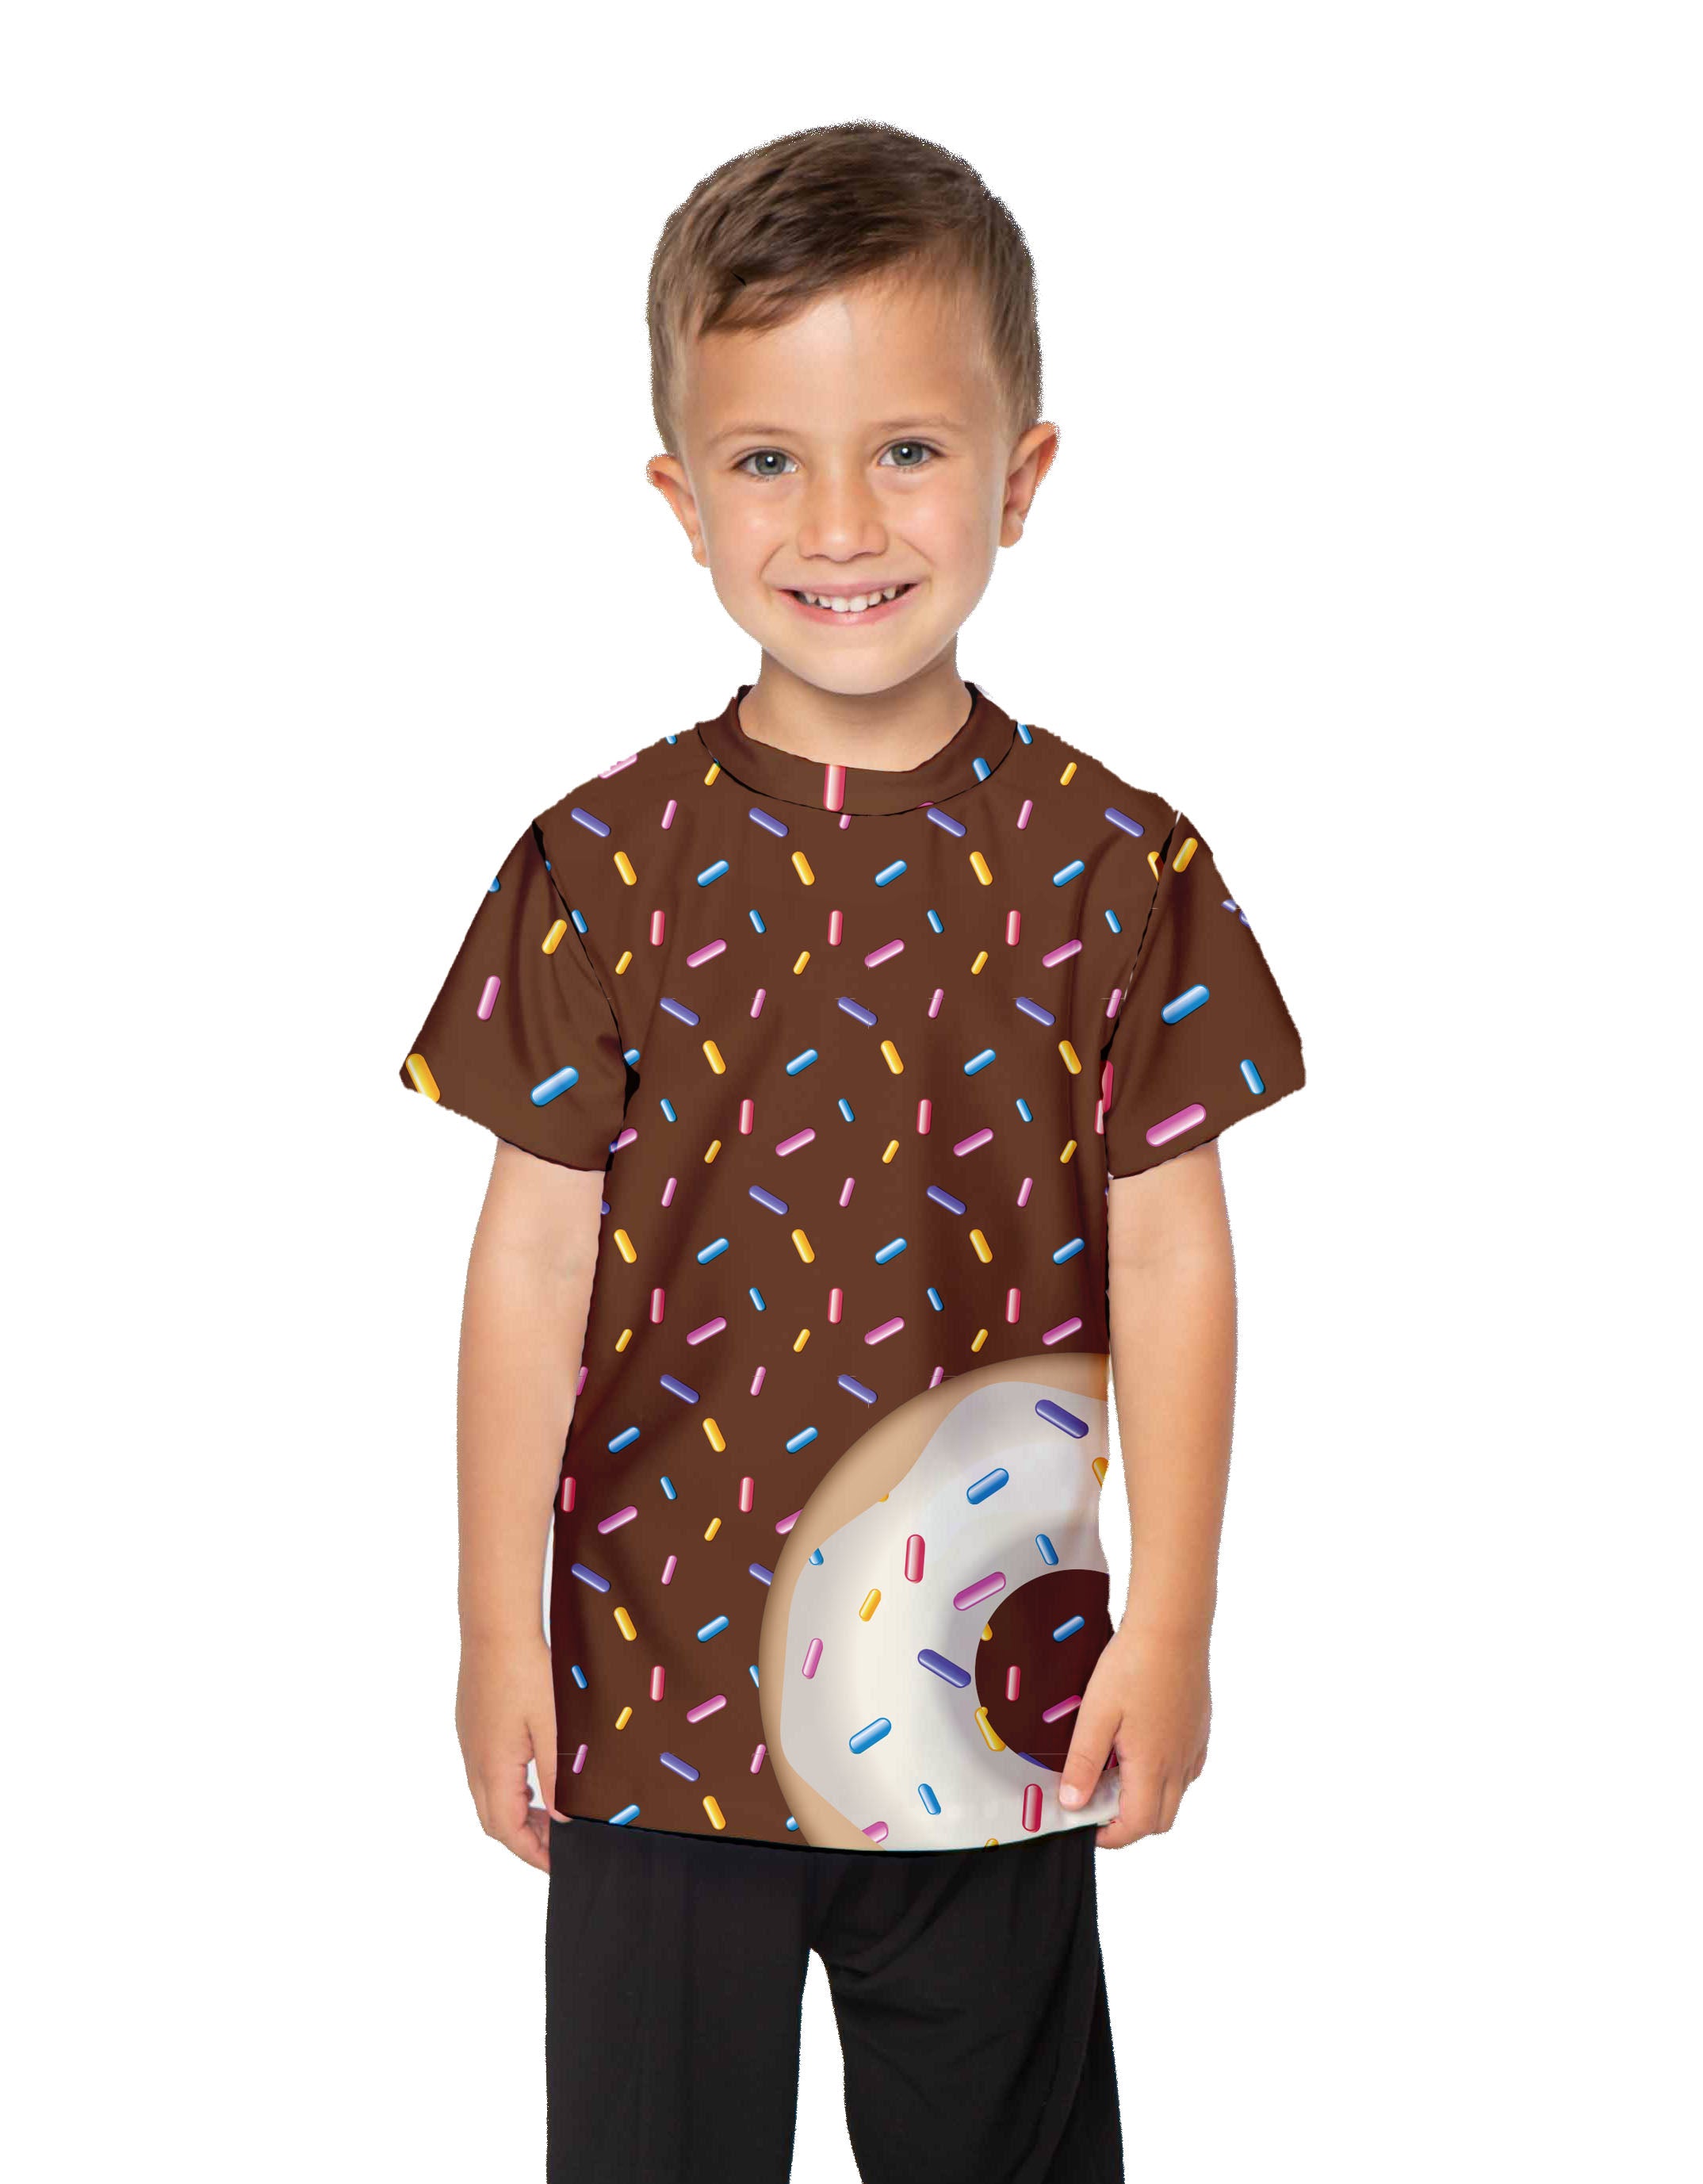 Donuts Boys Shirt